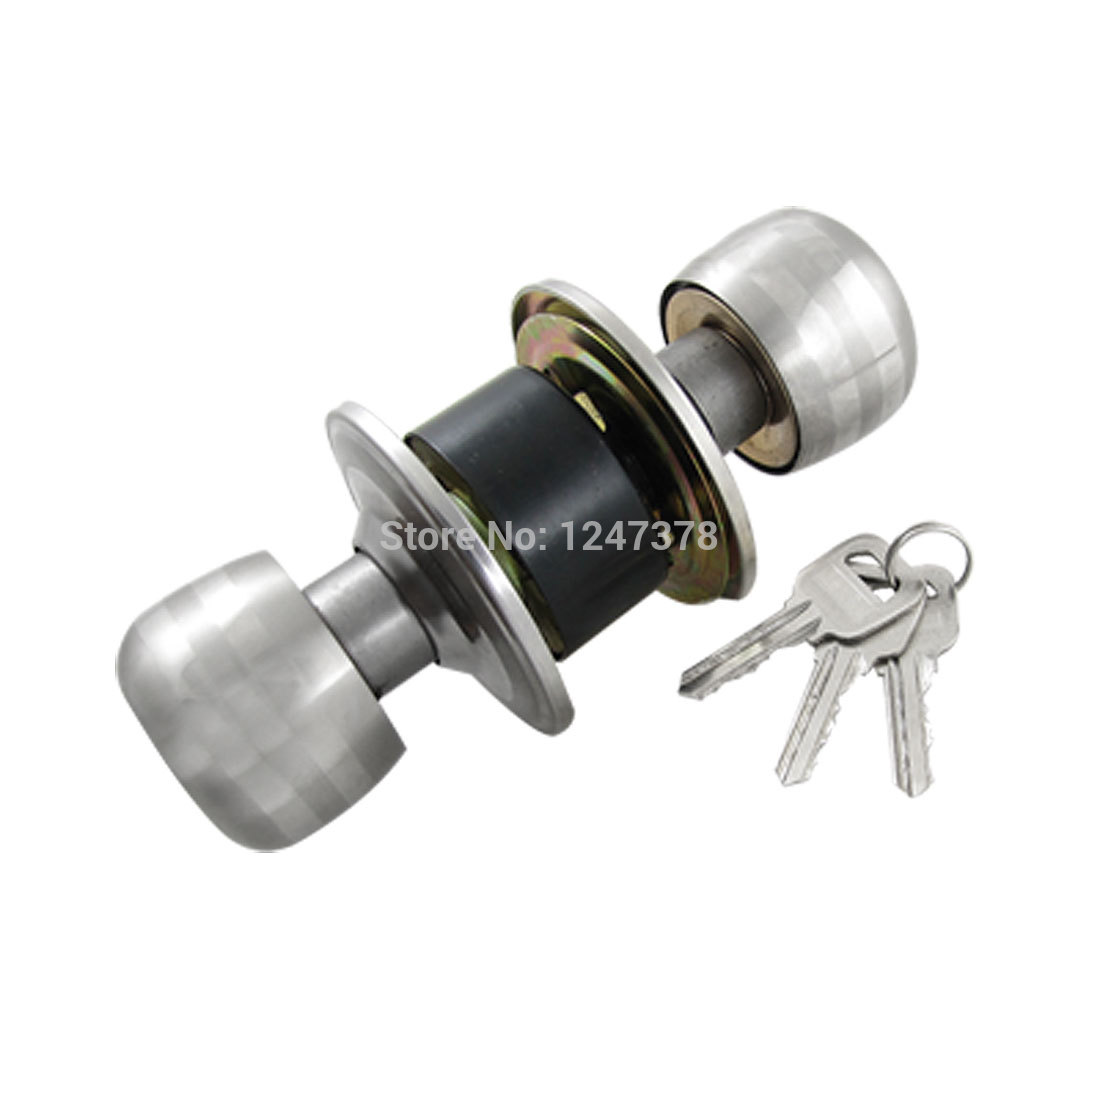 bedroom door knobs with key lock photo - 6